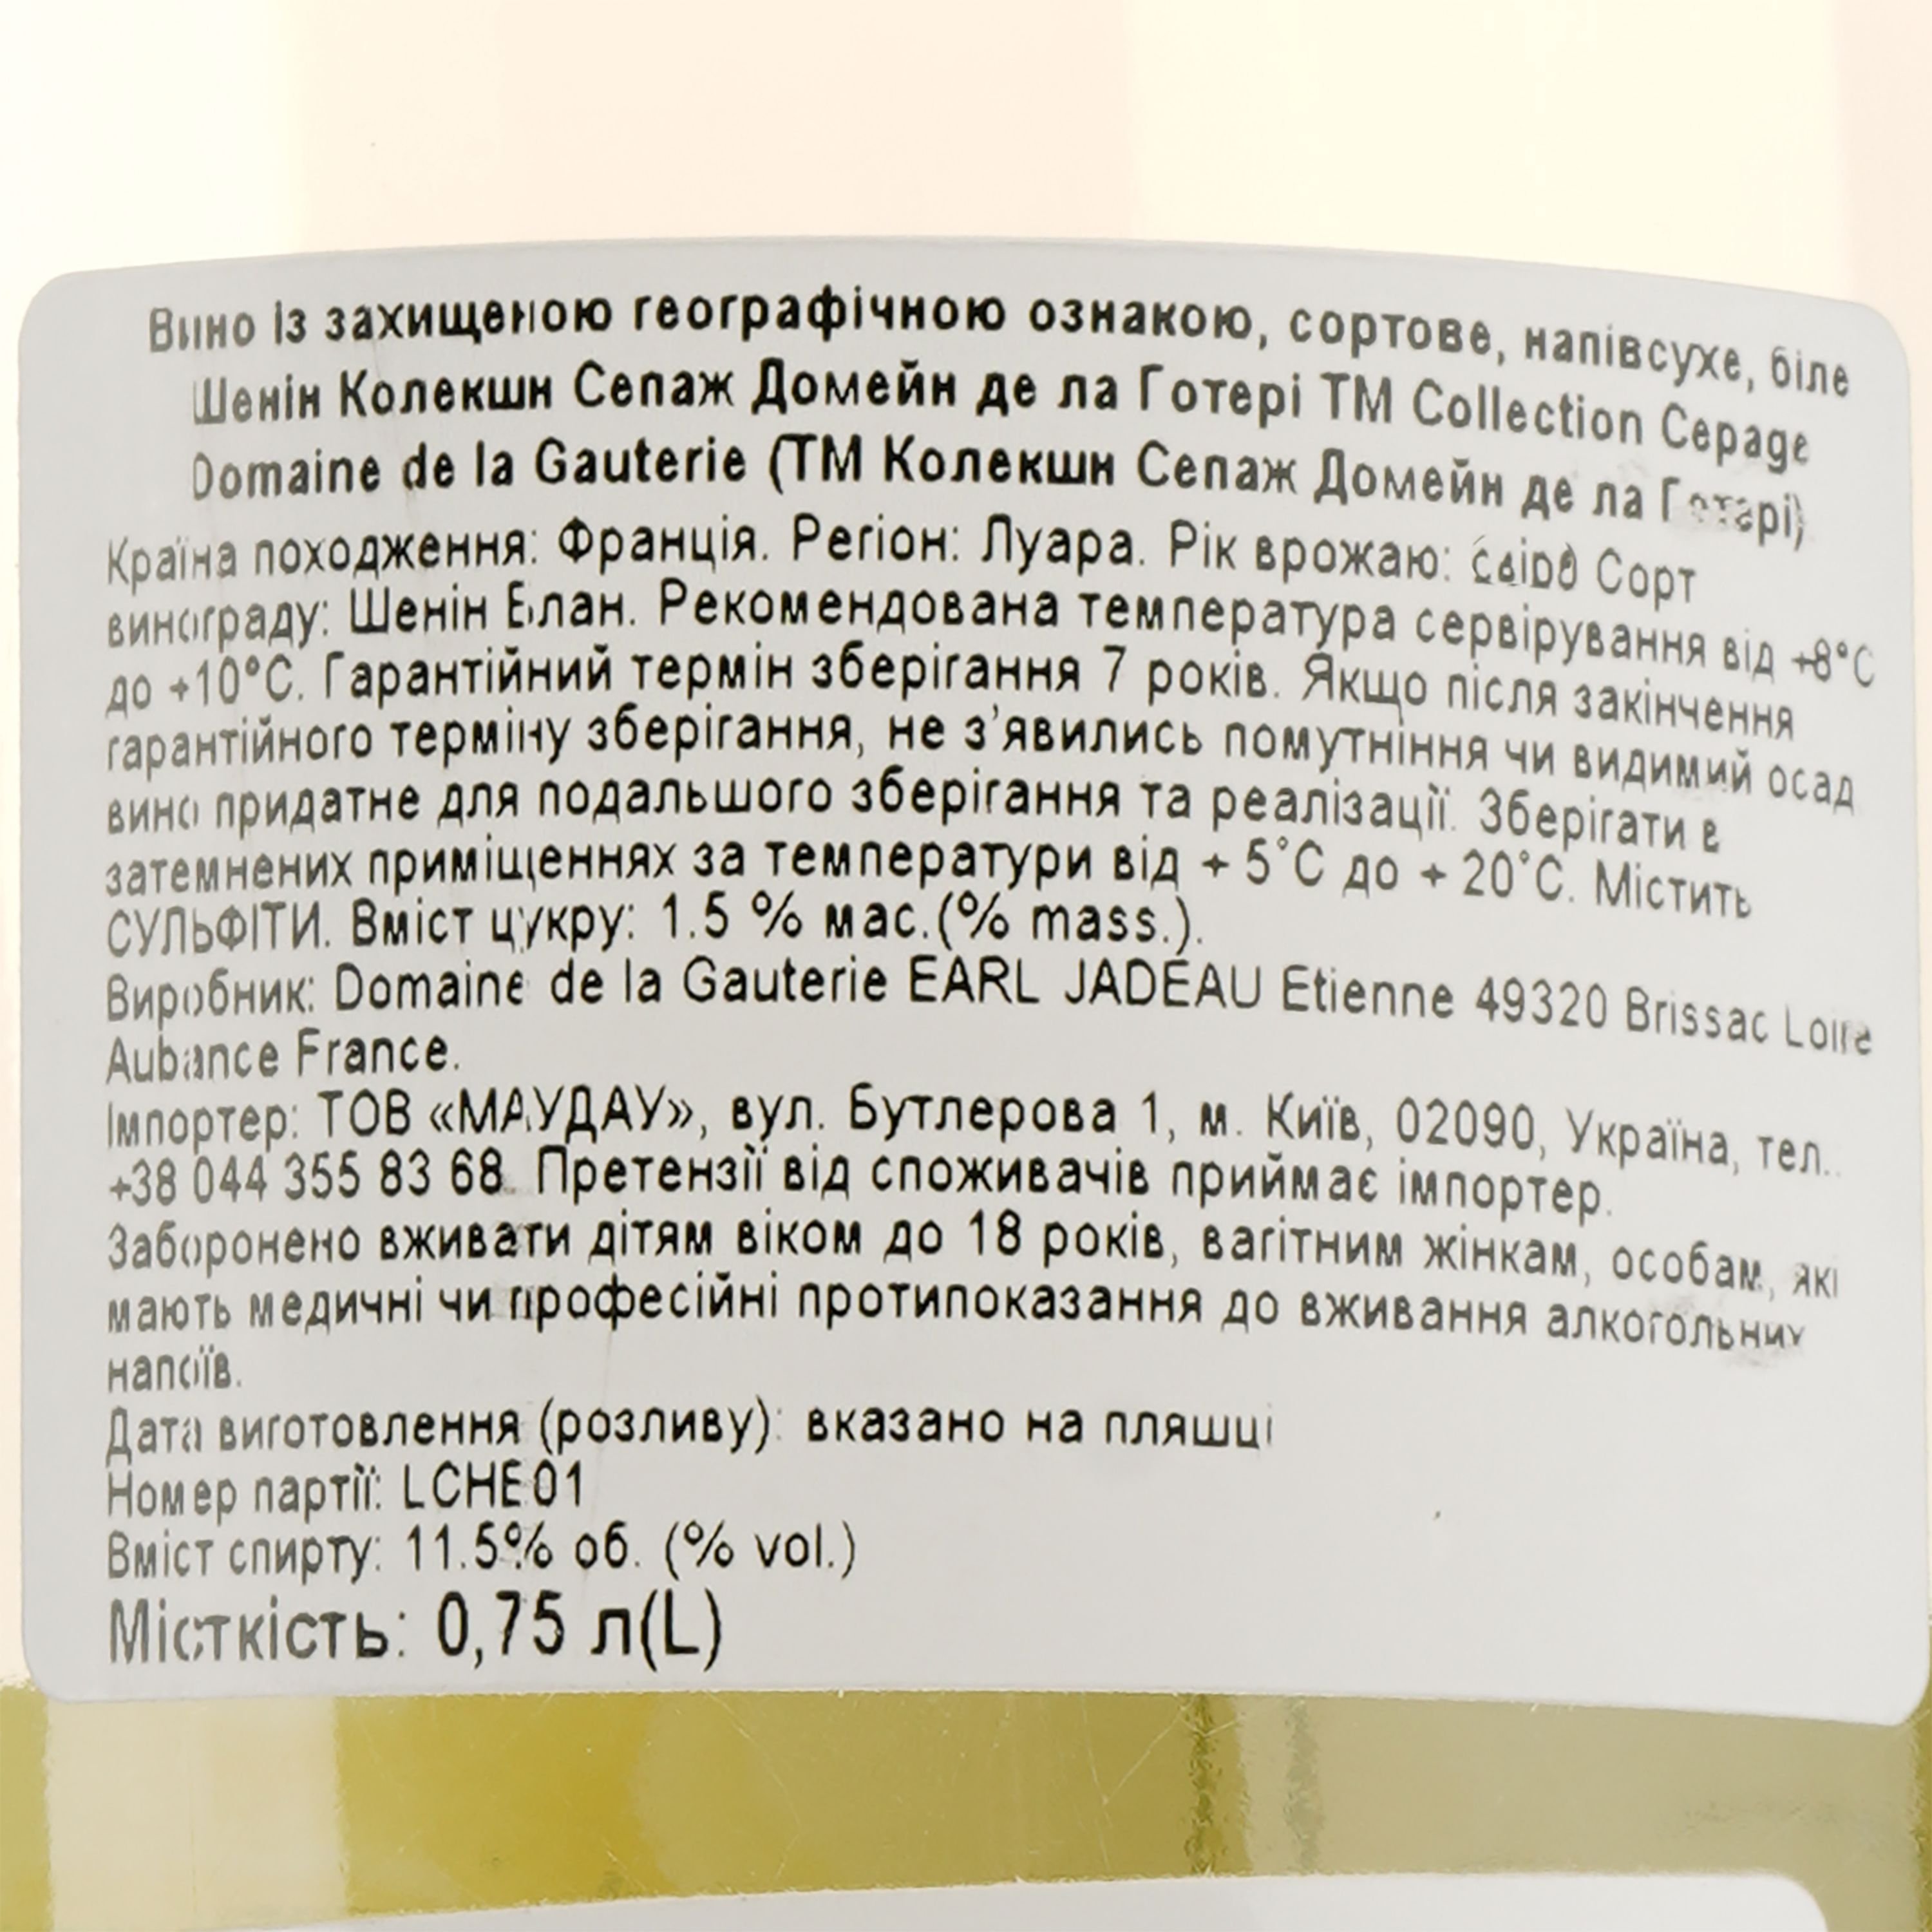 Вино Domaine de la Gauterie Chenin Collection Cepage Val de Loire IGP, белое, полусухое, 0,75 л - фото 3